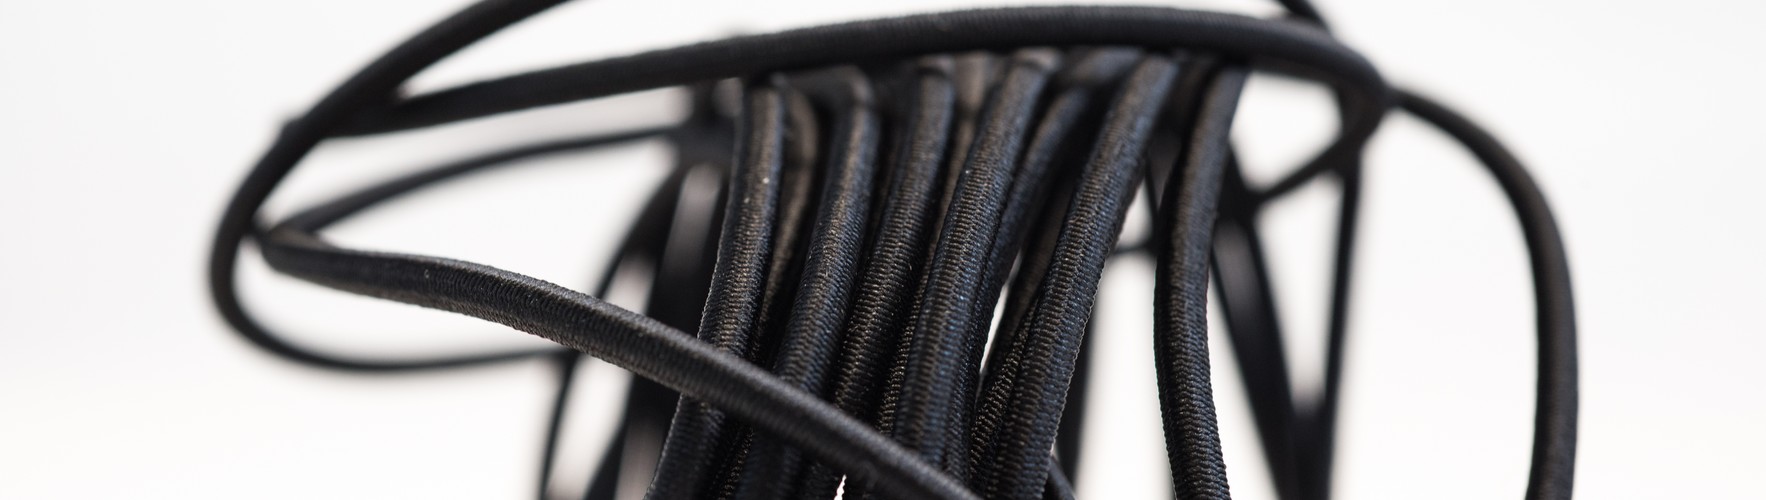 Cordon élastique 3mm - coloris Noir